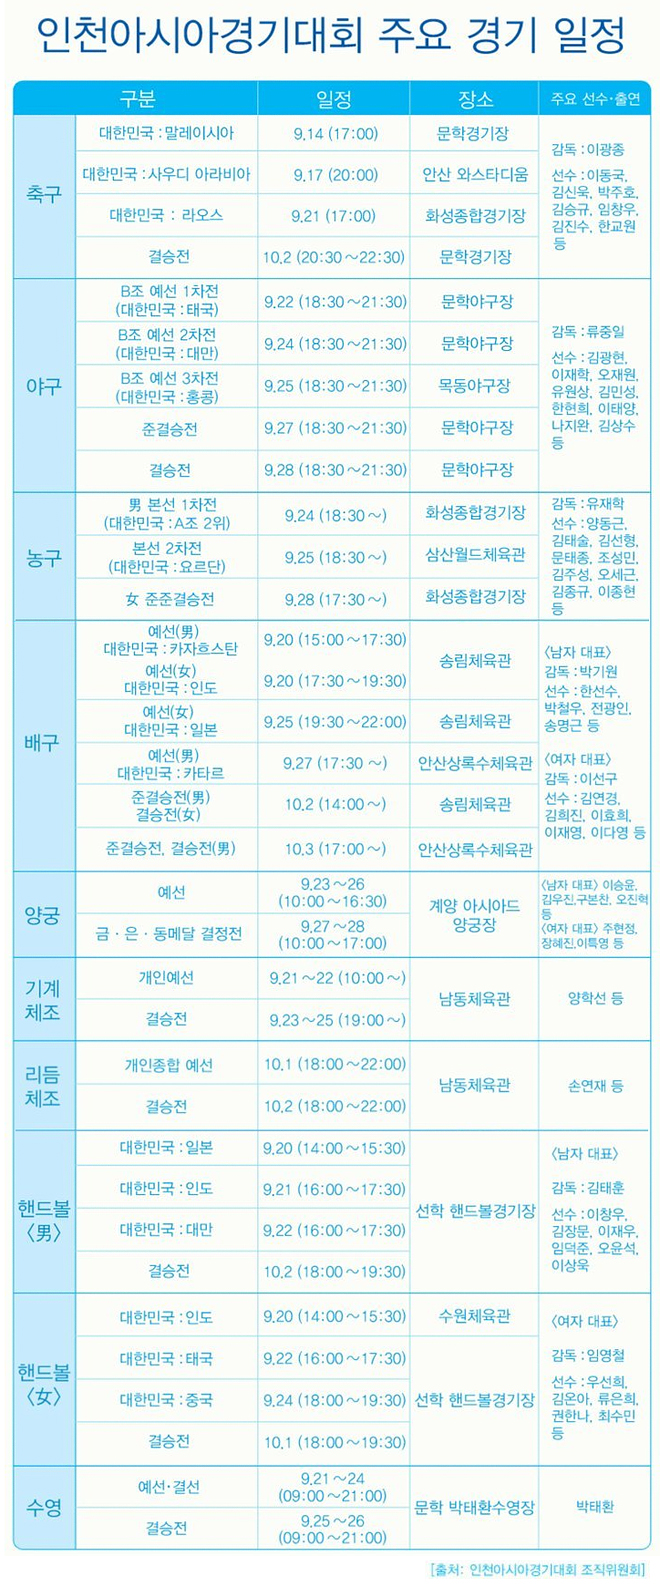 인천 아시아경기대회 주요 경기일정